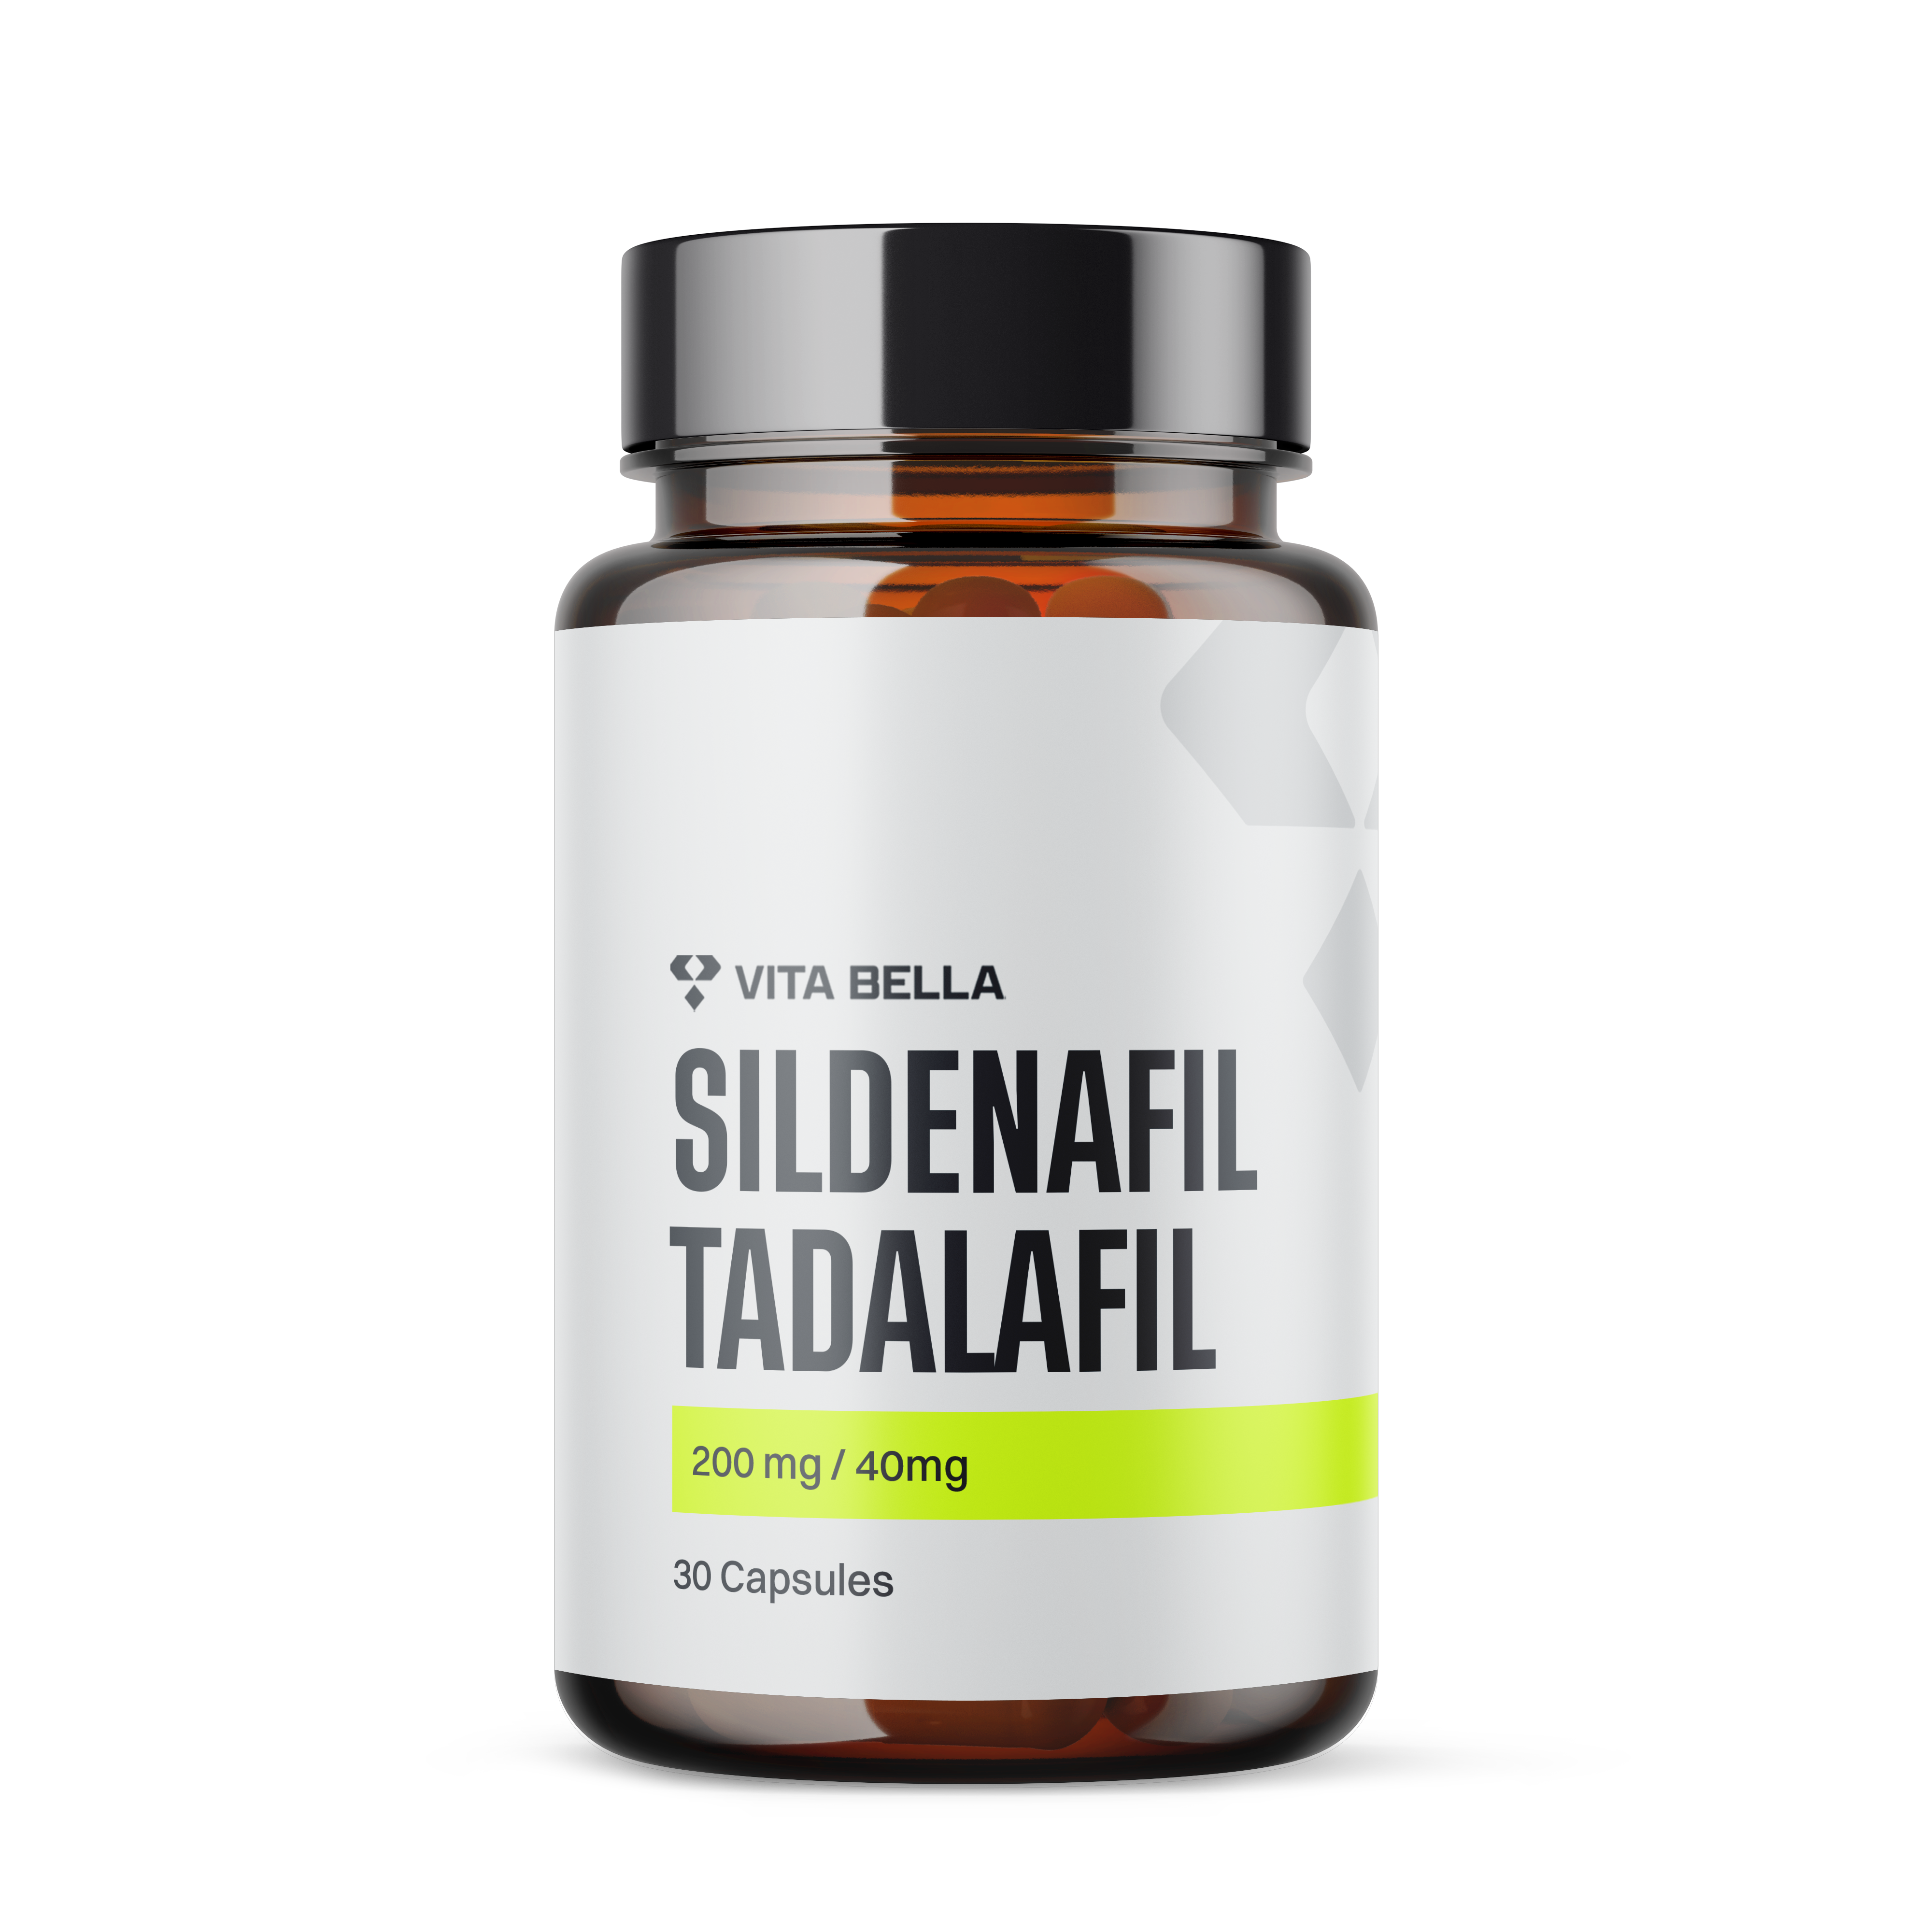 Sildenafil, tadalafil capsules